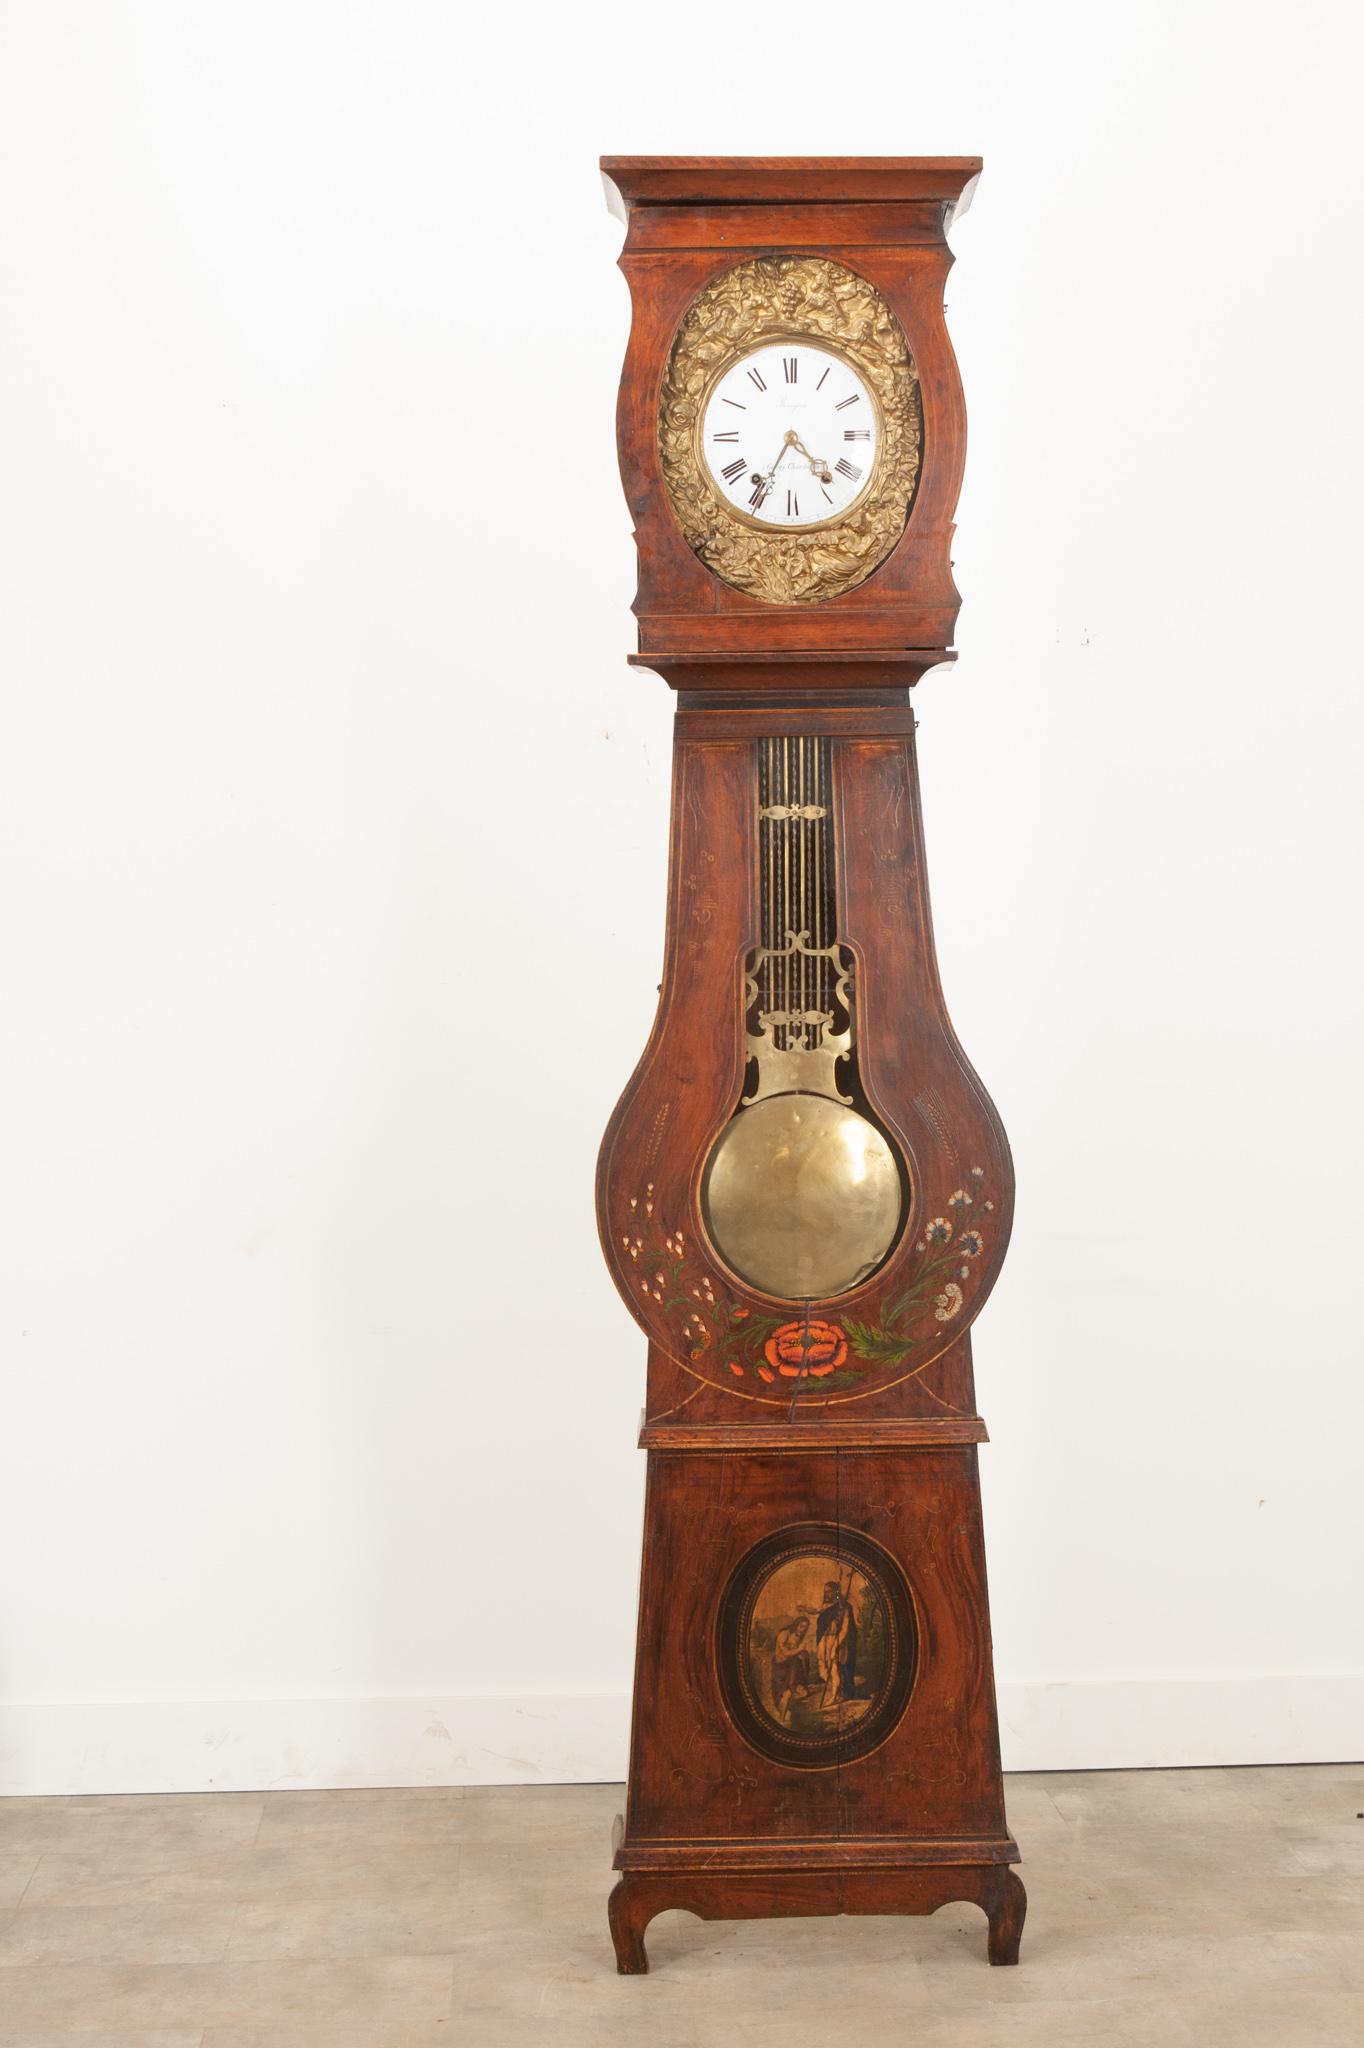 Diese französische Uhr in Form eines Banjos aus dem 19. Jahrhundert ist ein echter Blickfang in jedem Raum. Gekrönt von einem kunstvoll geschnitzten Gesims über der Zifferblatttür. Das Zifferblatt mit den handgemalten römischen Ziffern wird von